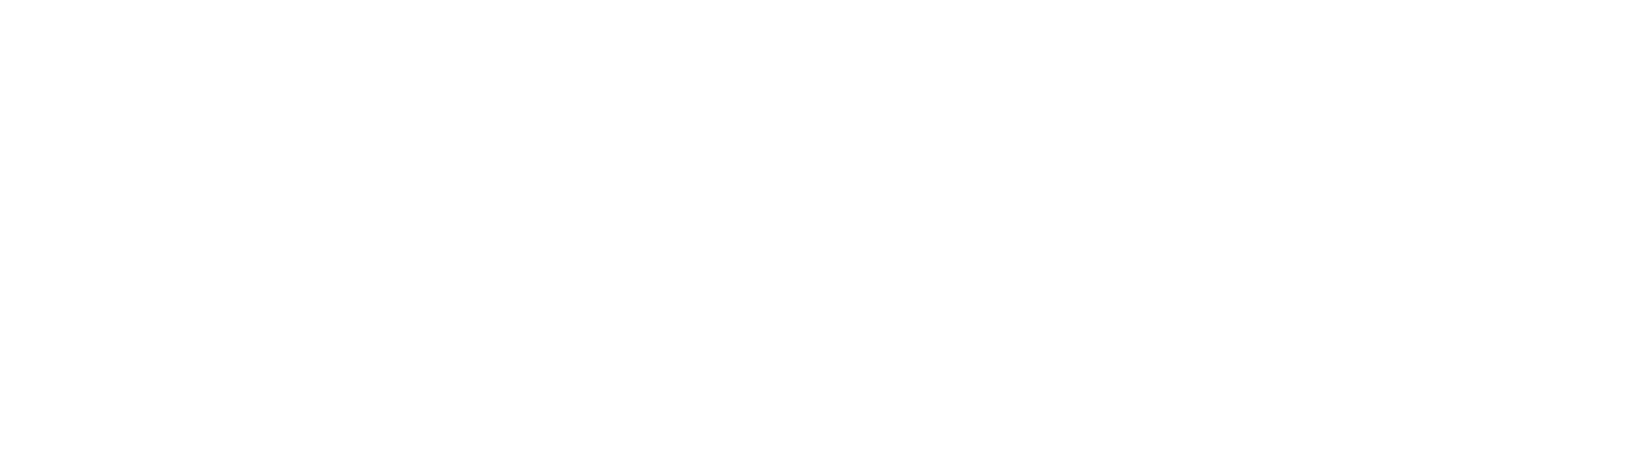 The world's premier golf tournament — ZOZO CHAMPIONSHIP 2023